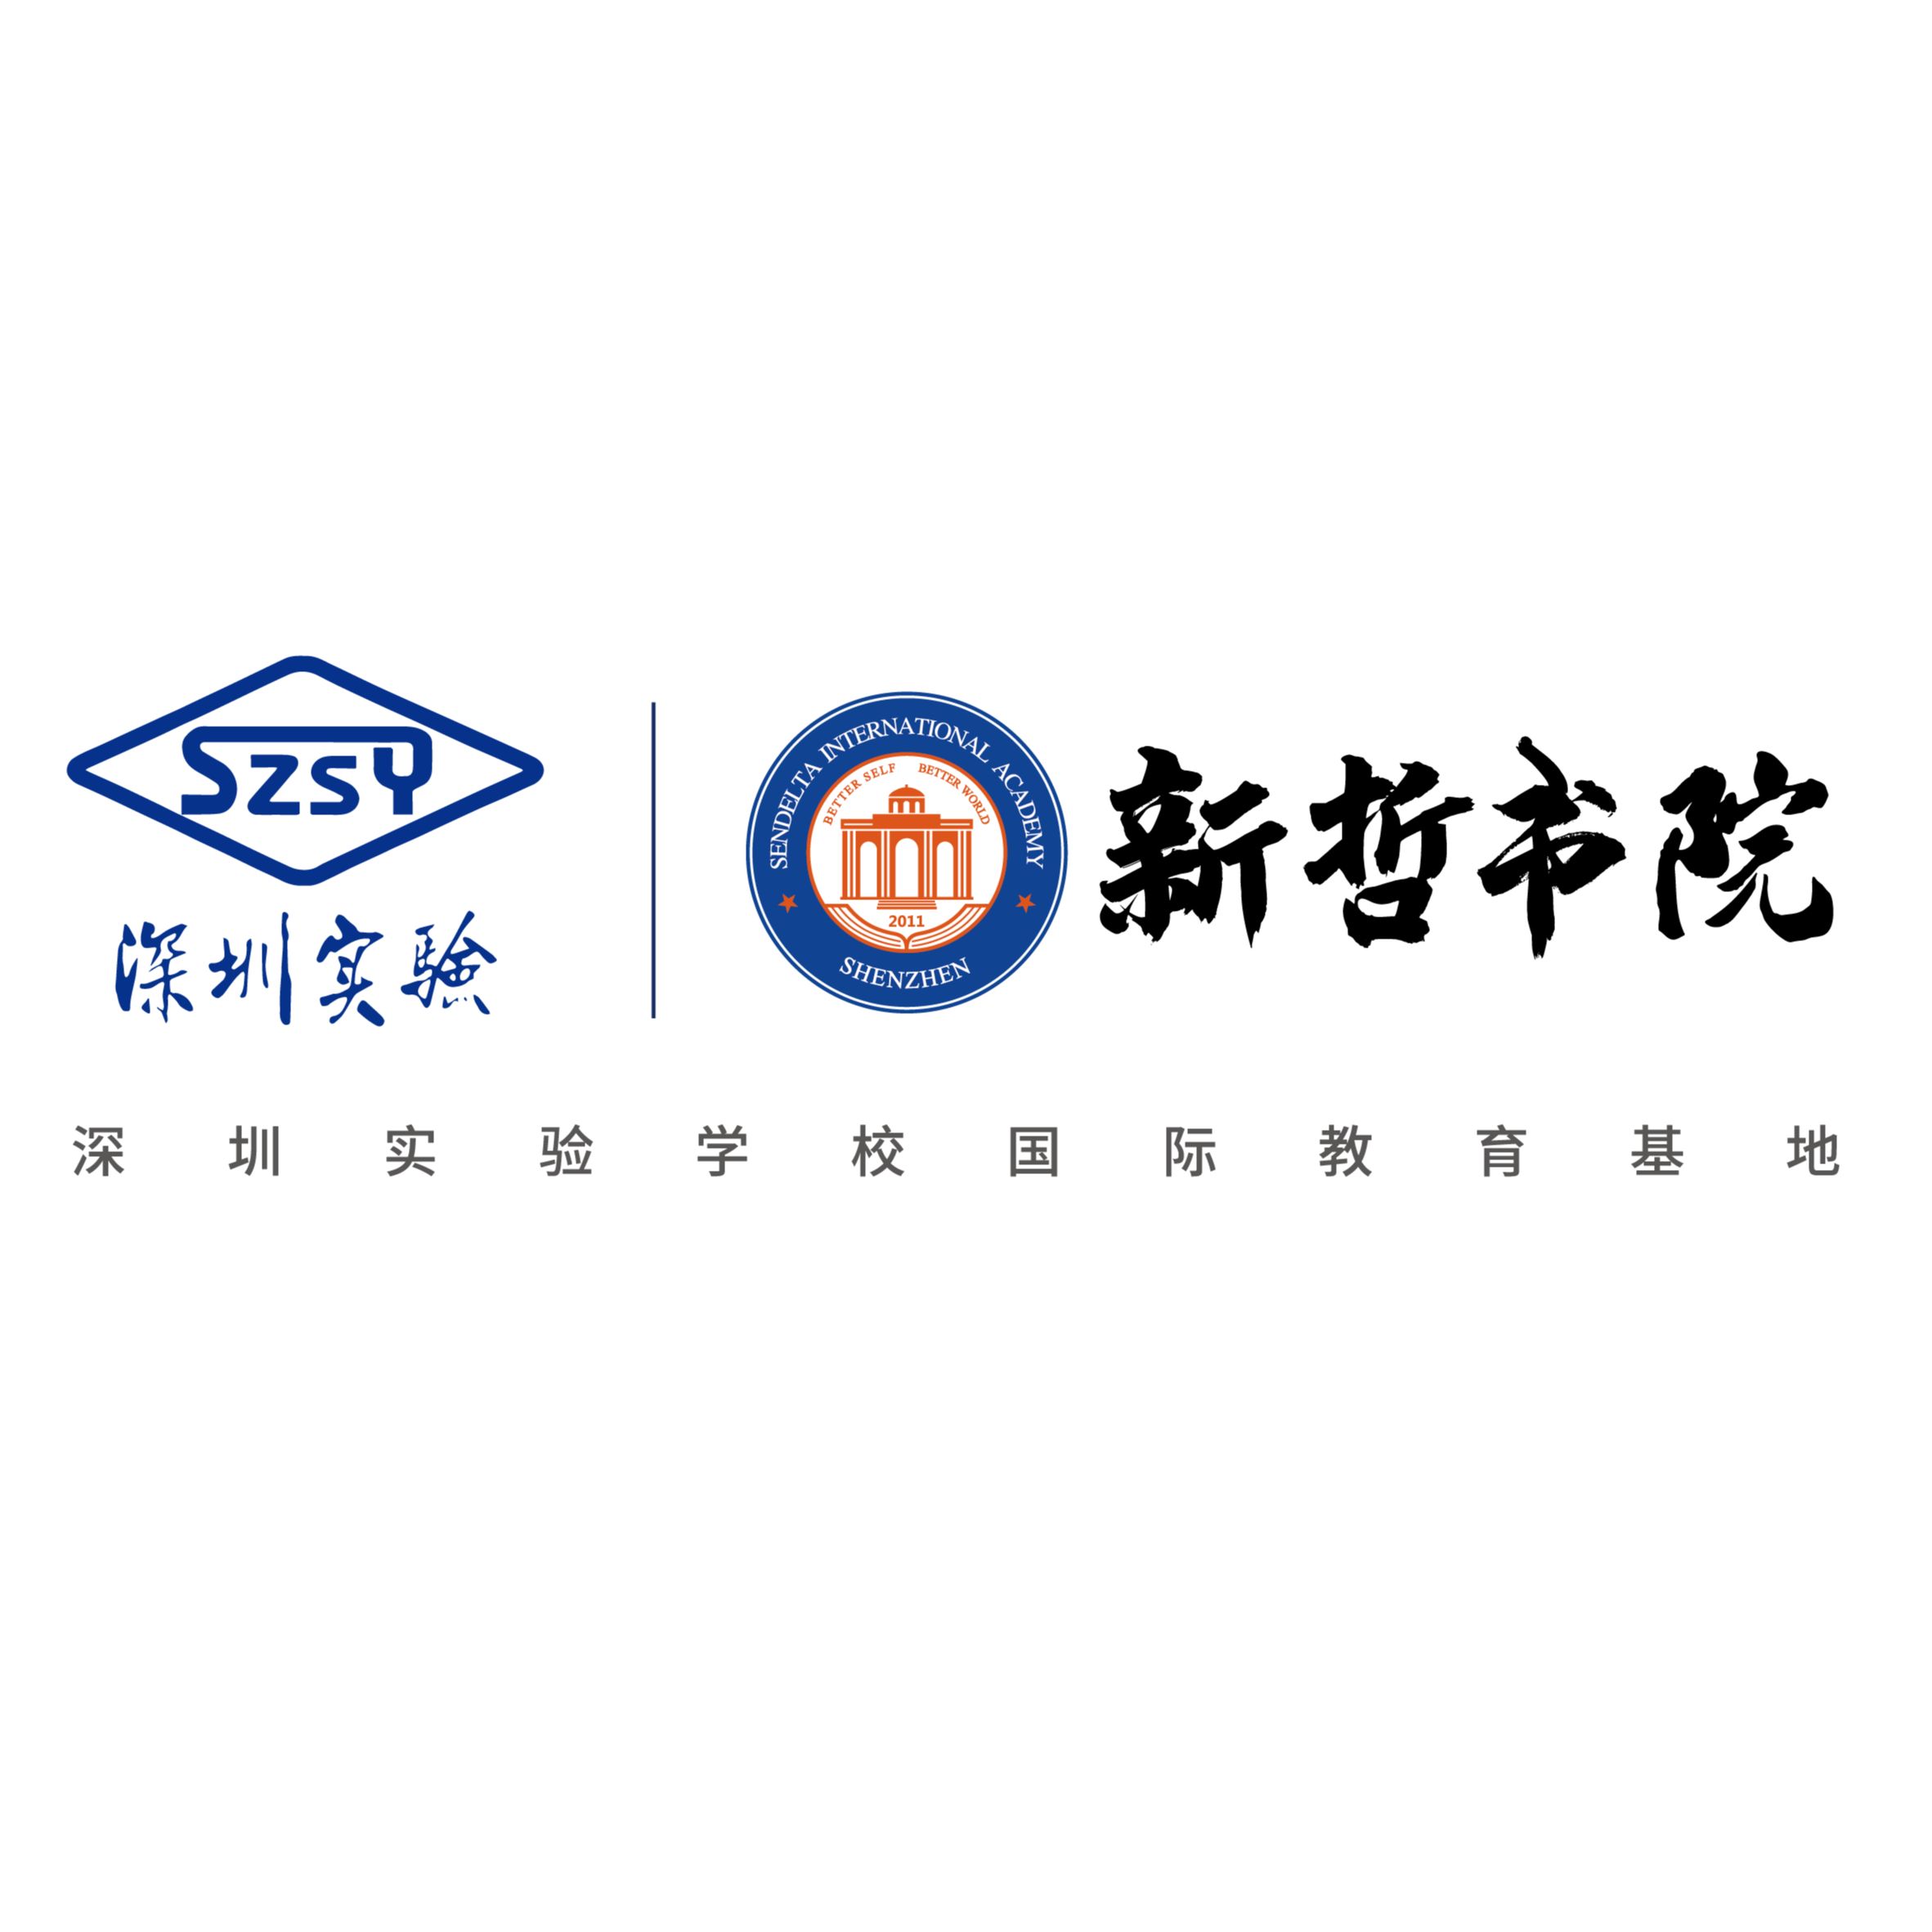 Sendelta International Academy Shenzhen logo